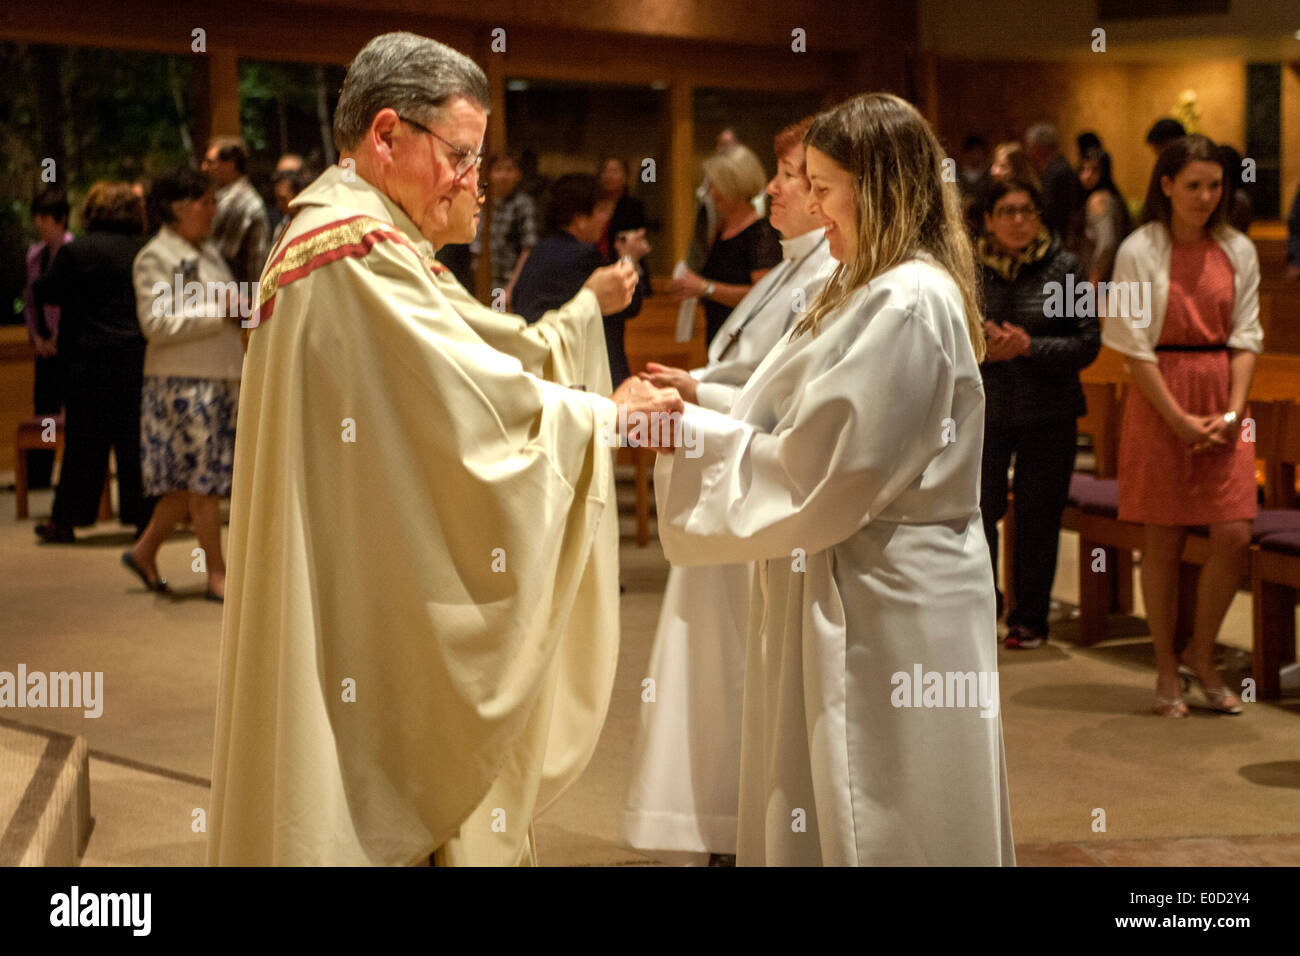 Die Pfarrer von St. Timothy katholische Kirche, Laguna Niguel, CA, bietet neue Mitglieder der Kongregation in der Nacht ihrer Taufe Kommunion. Beachten Sie die weiße Gewändern. Stockfoto